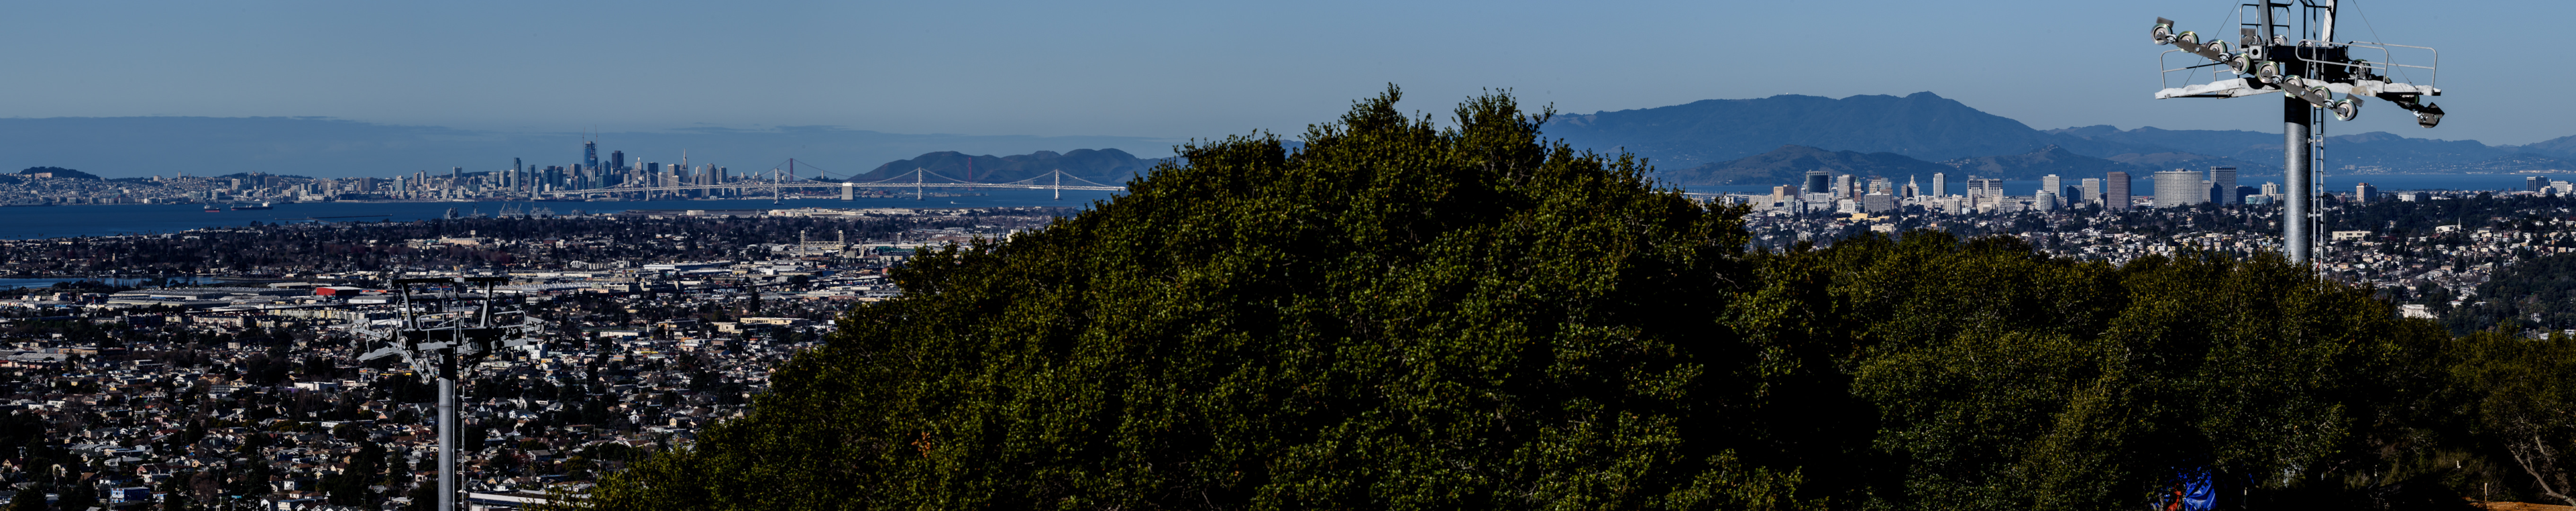 Vista de Bison Overlook de la ciudad de Oakland, el Puente de la Bahía y San Francisco al fondo